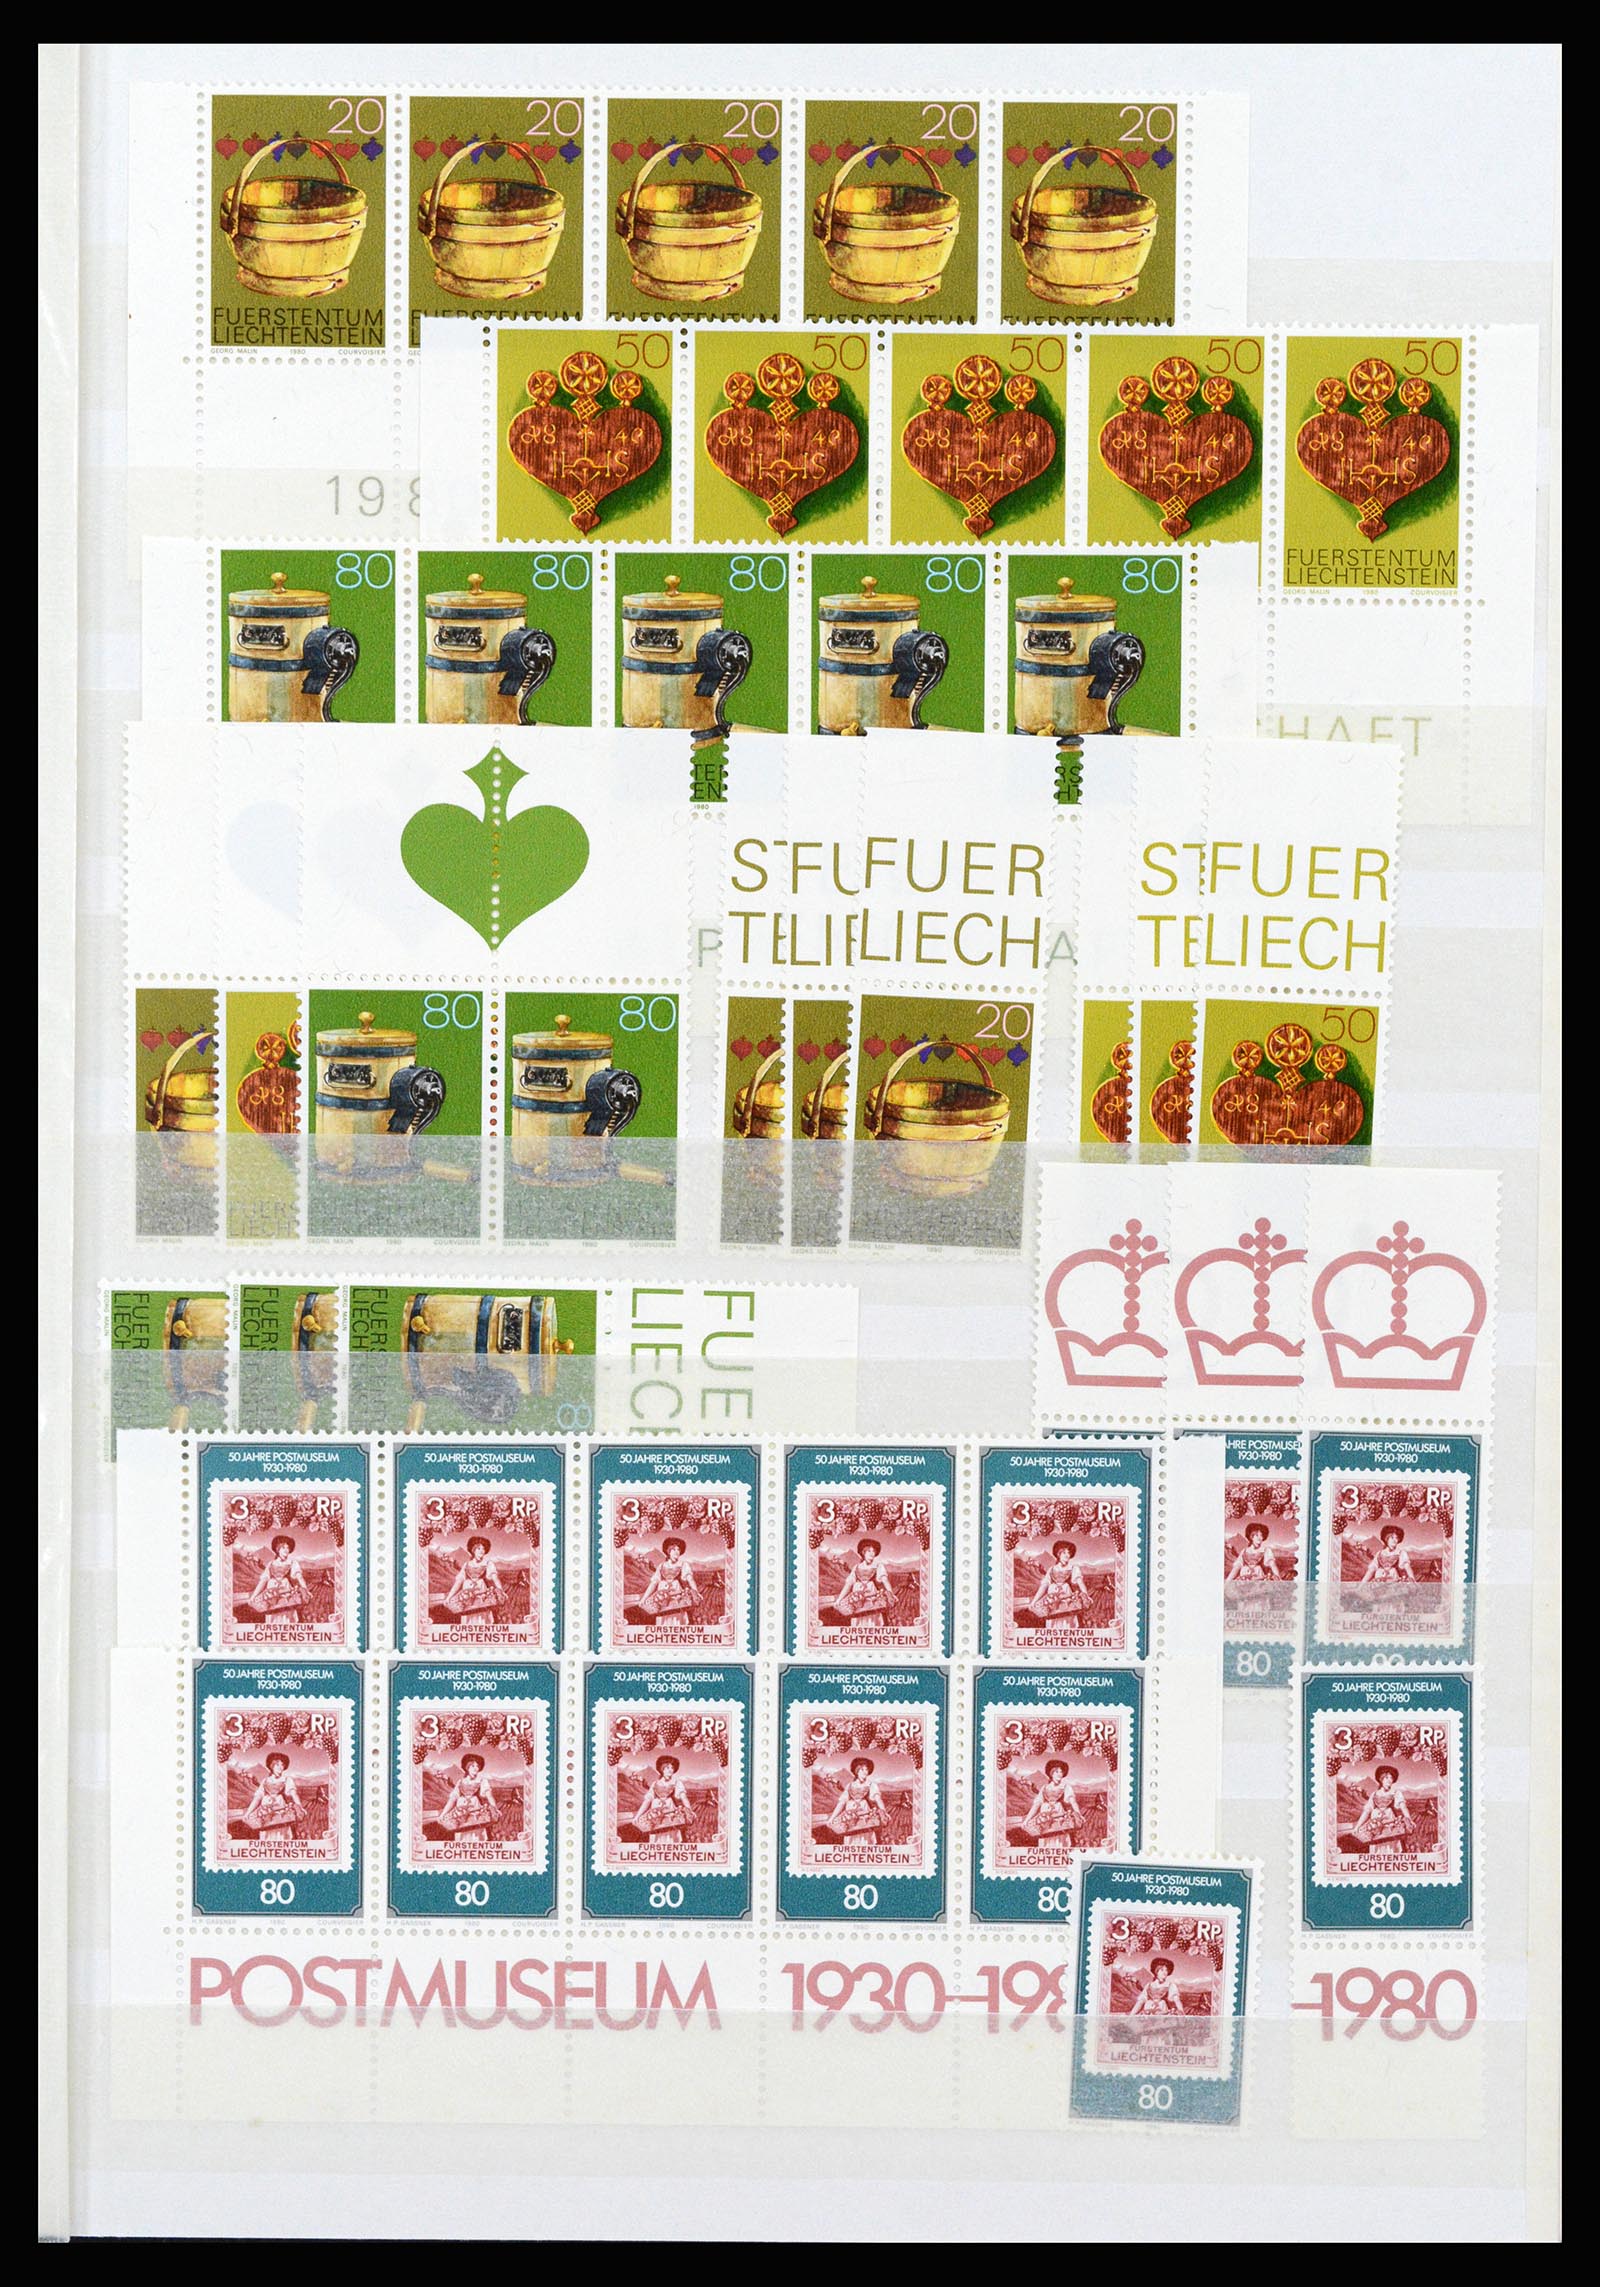 37261 061 - Stamp collection 37261 Liechtenstein 1961-1995.